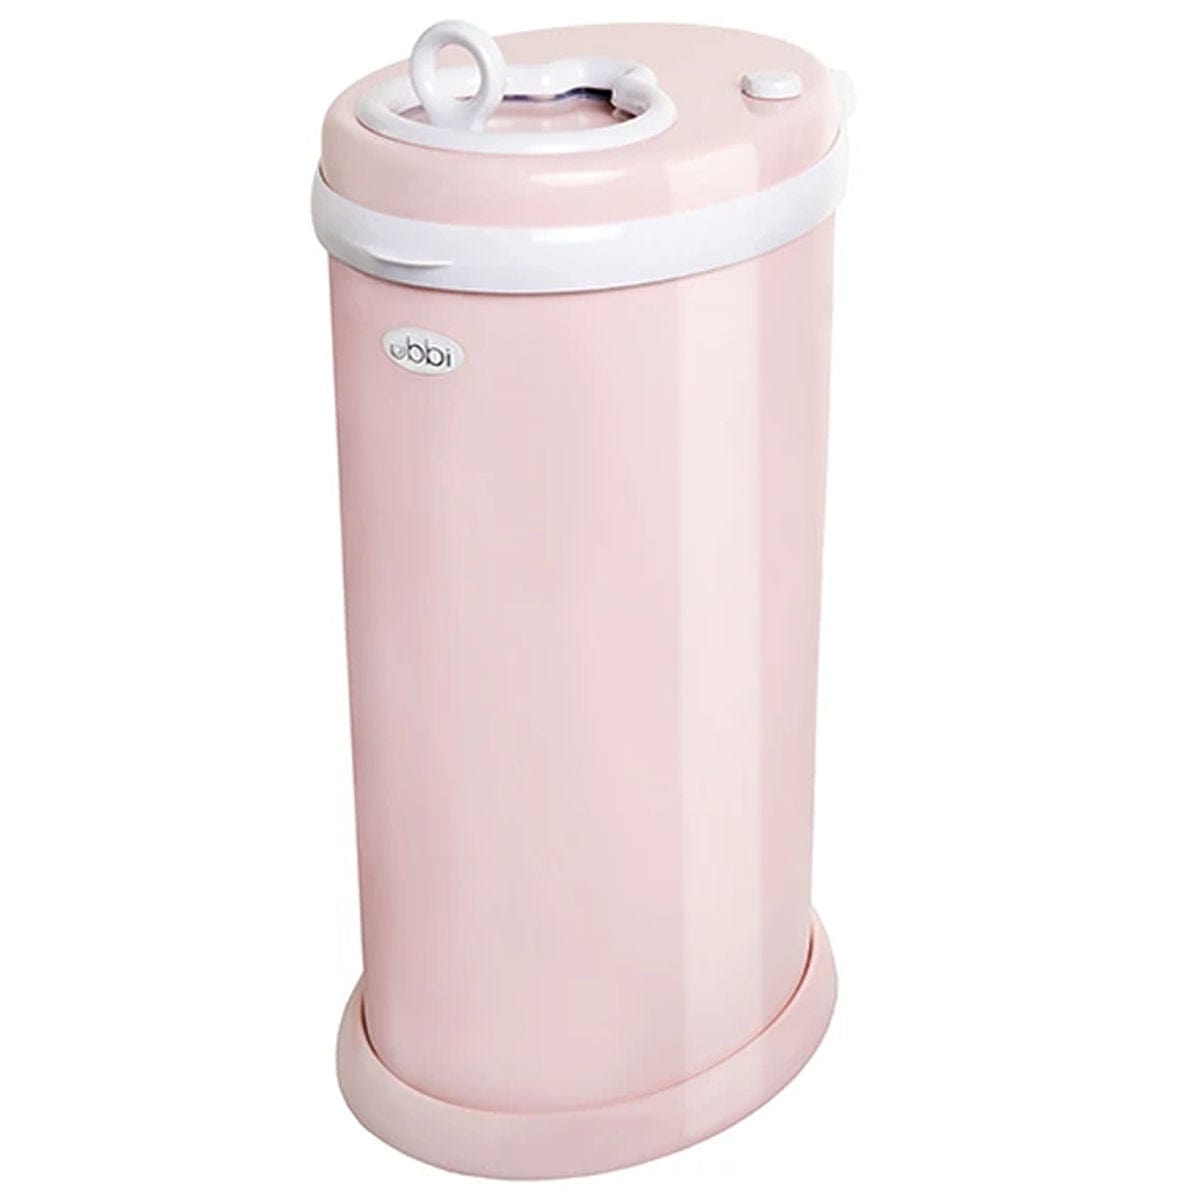 Blush Pink - Ubbi Diaper Pail